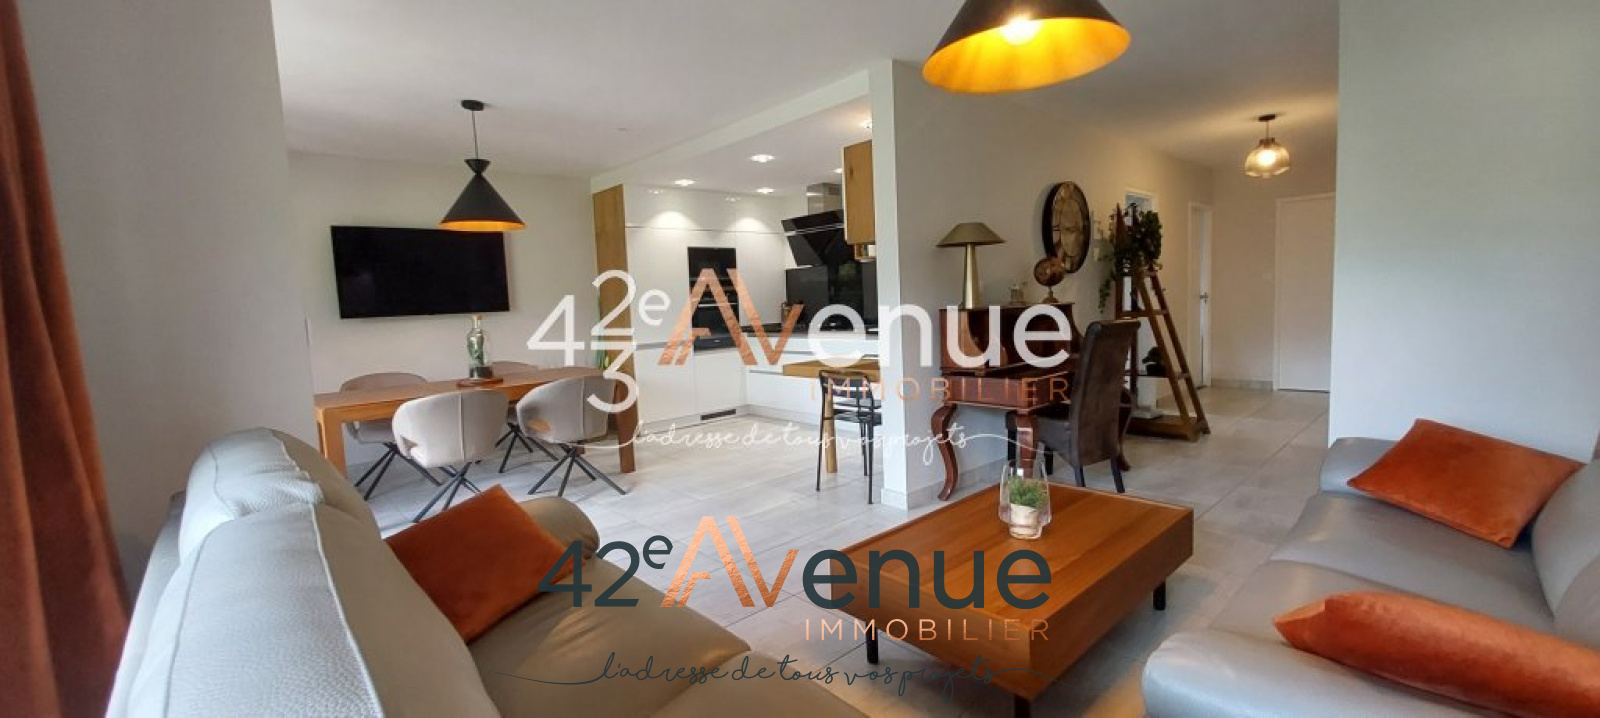 Vente Appartement 70m² 3 Pièces à Saint-Étienne (42000) - 42ème Avenue